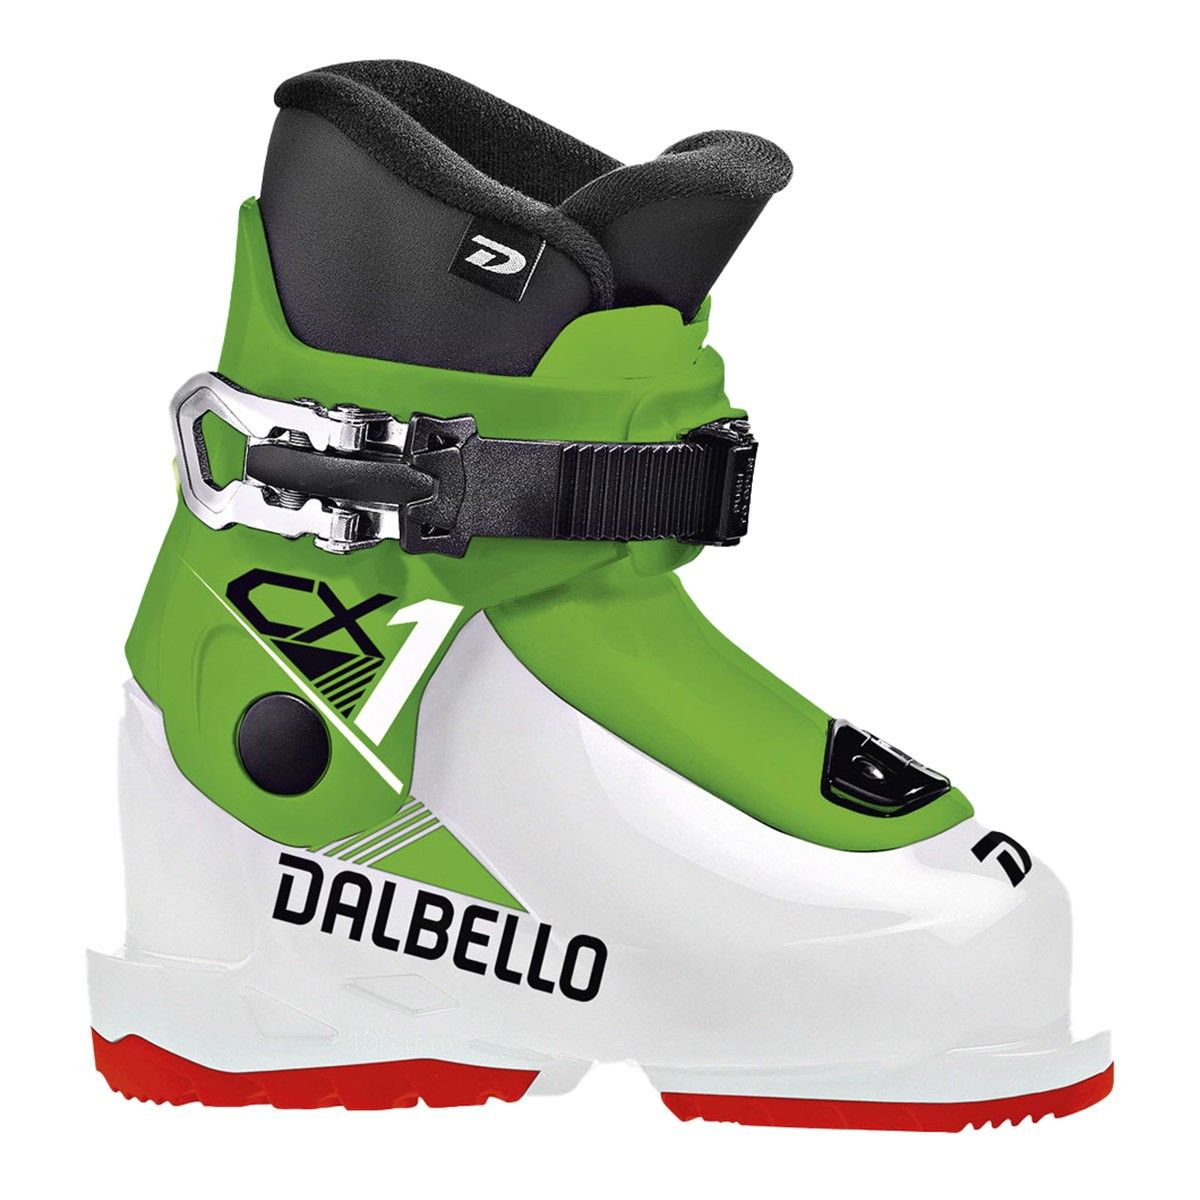  Scarponi sci Dalbello CX 1.0 GW (Colore: white race green, Taglia: 14.5) 